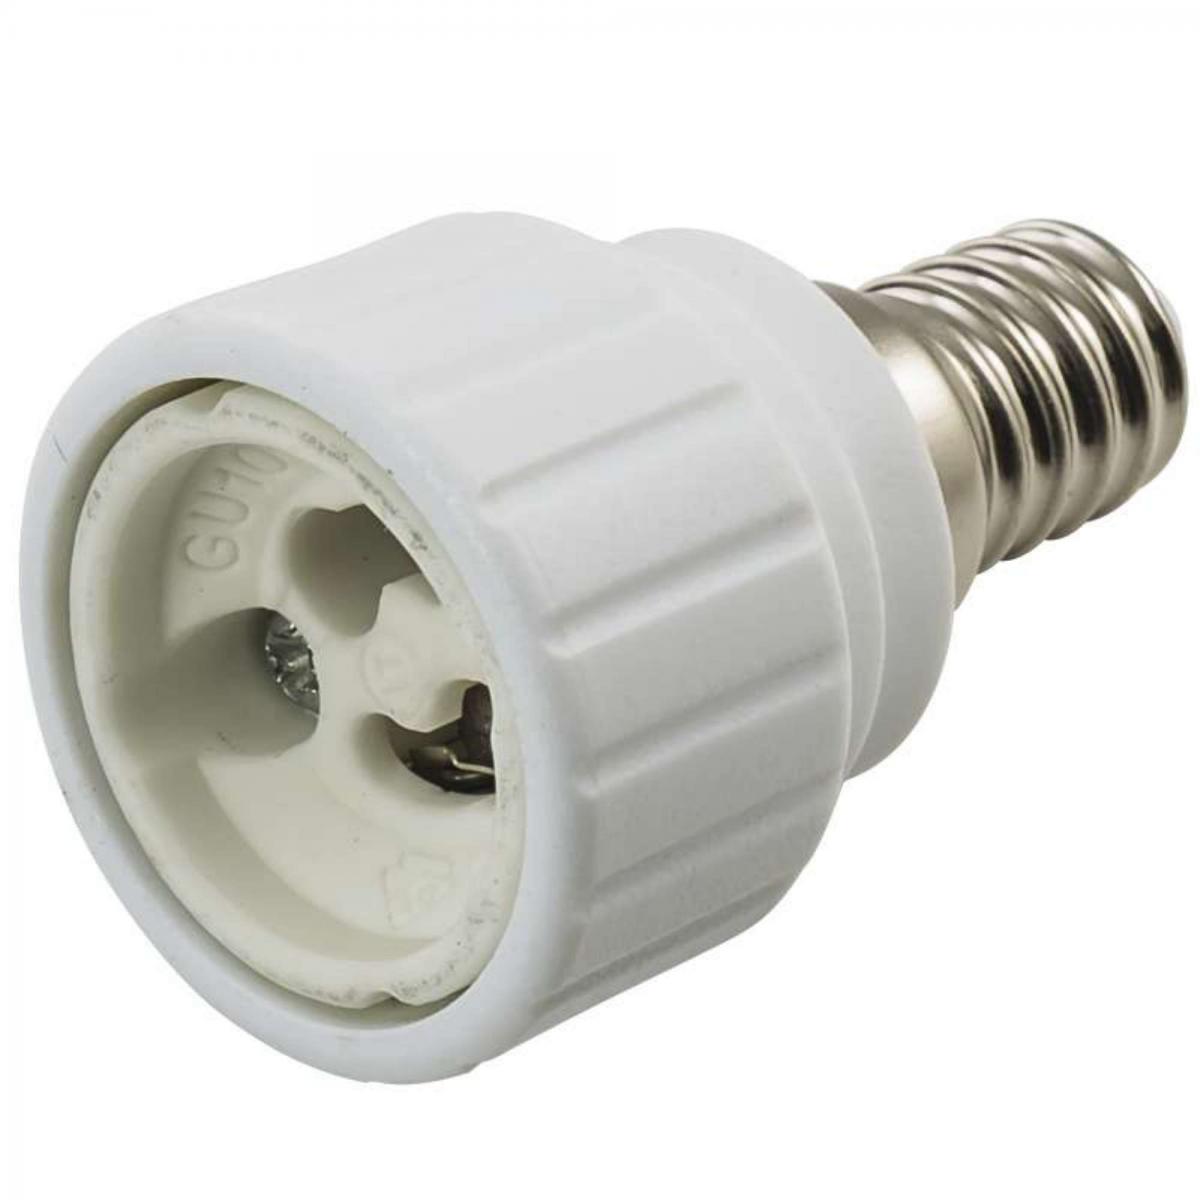 Provence Outillage - Adaptateur douille E14 pour ampoule GU10 - Ampoules LED